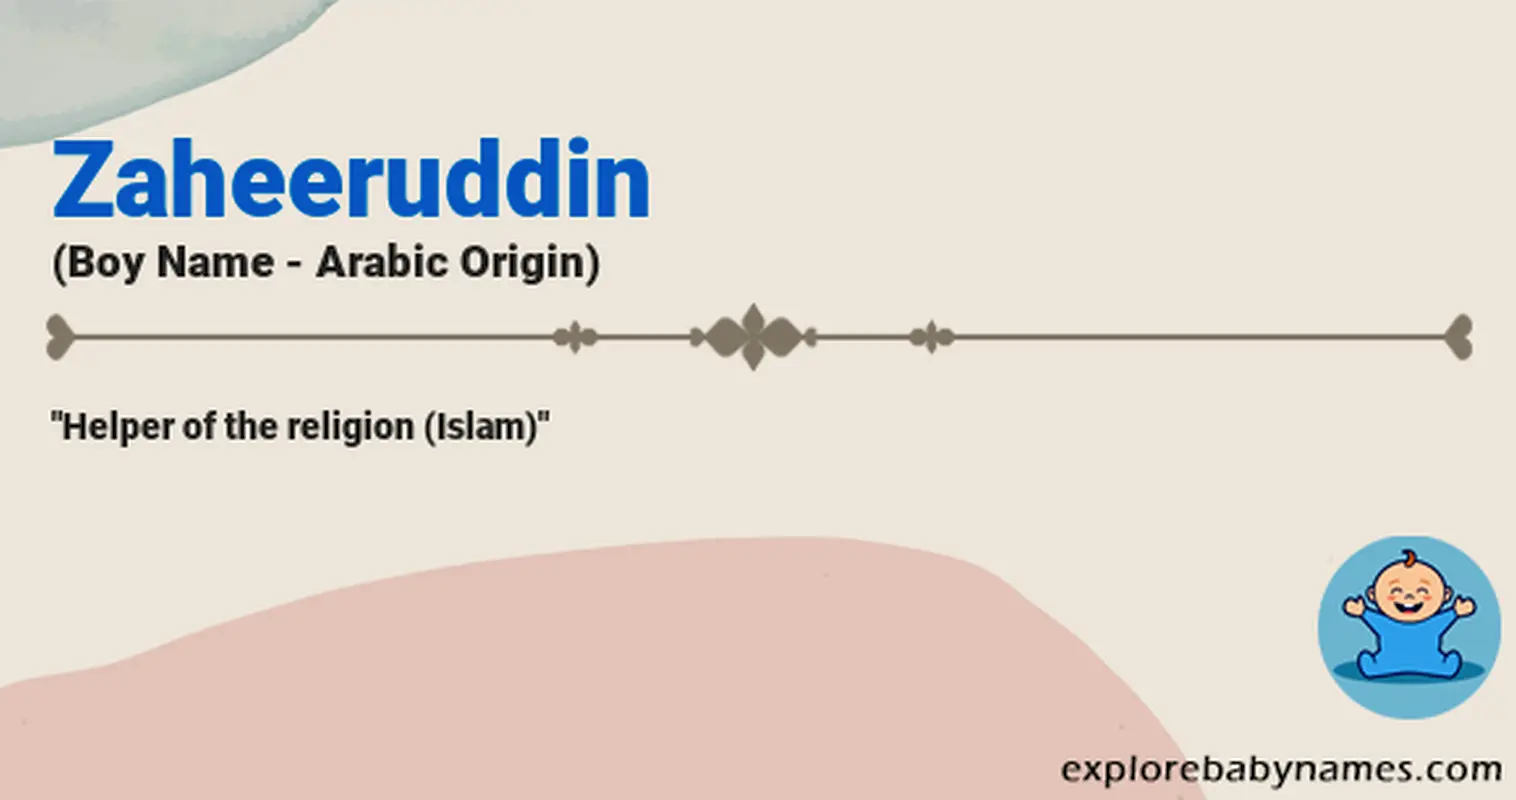 Meaning of Zaheeruddin